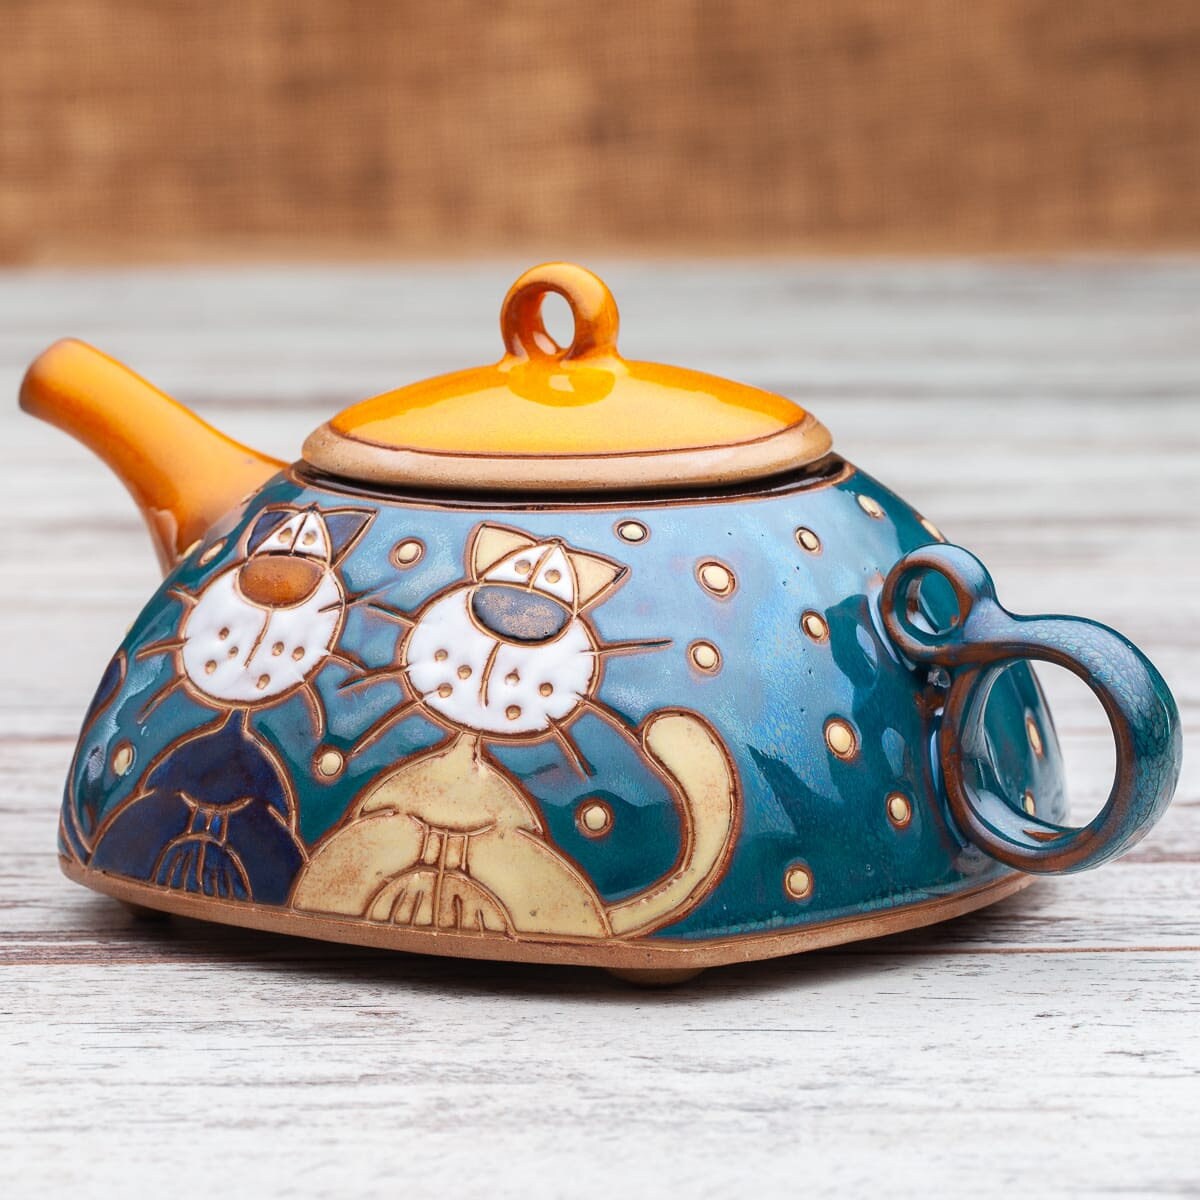 théière pour un, chauffe-théière, bouilloire en céramique, théière confortable, cafetière unique, poterie de théière, accessoires thé